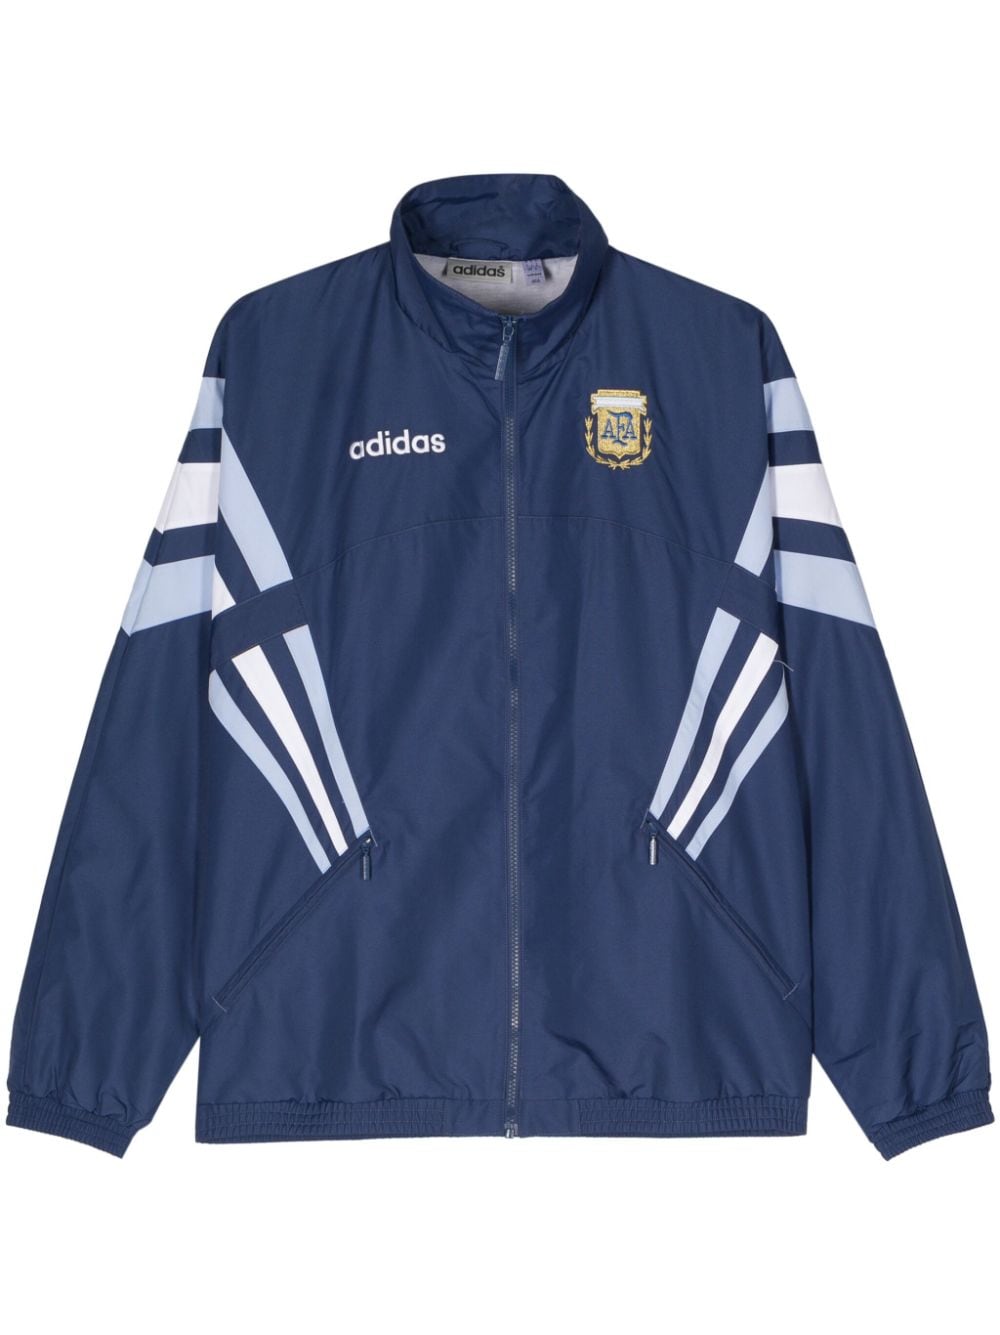 adidas 1994 Argentina Sportjacke - Blau von adidas